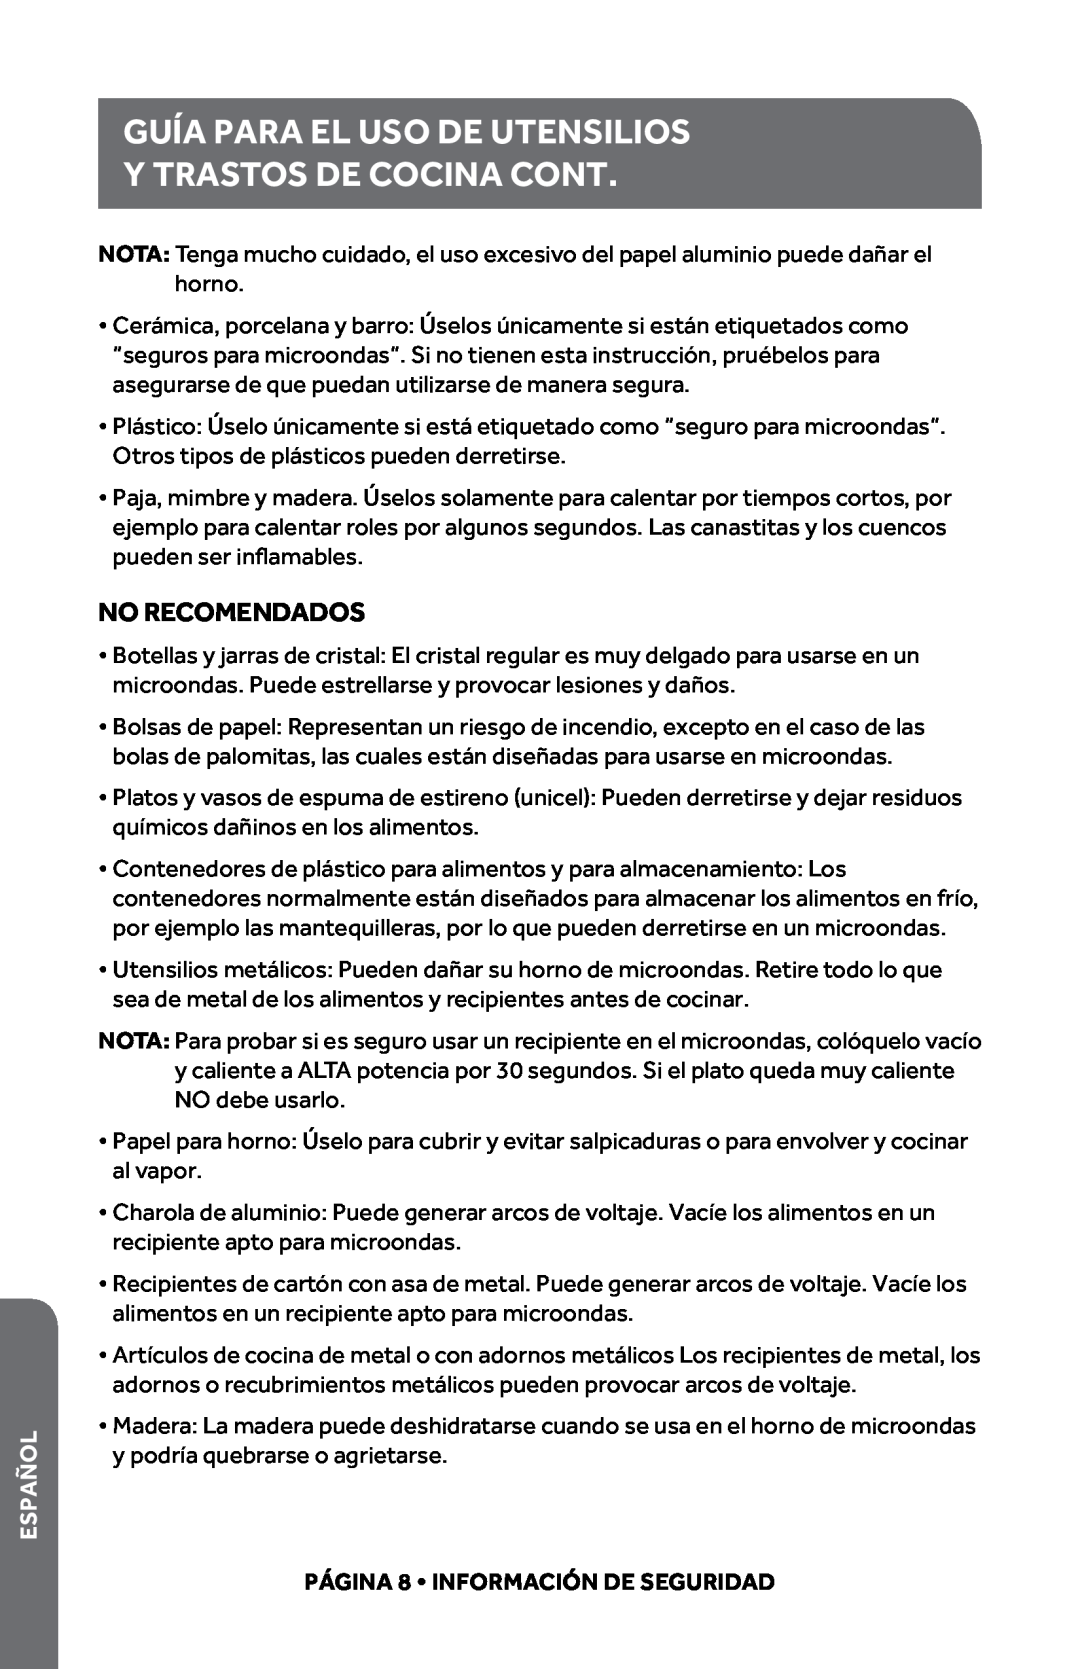 Haier HMC920BEWW, HMC0903SESS user manual Y TRASTOS DE COCINA Cont, Guía Para El Uso De Utensilios, No Recomendados, Español 